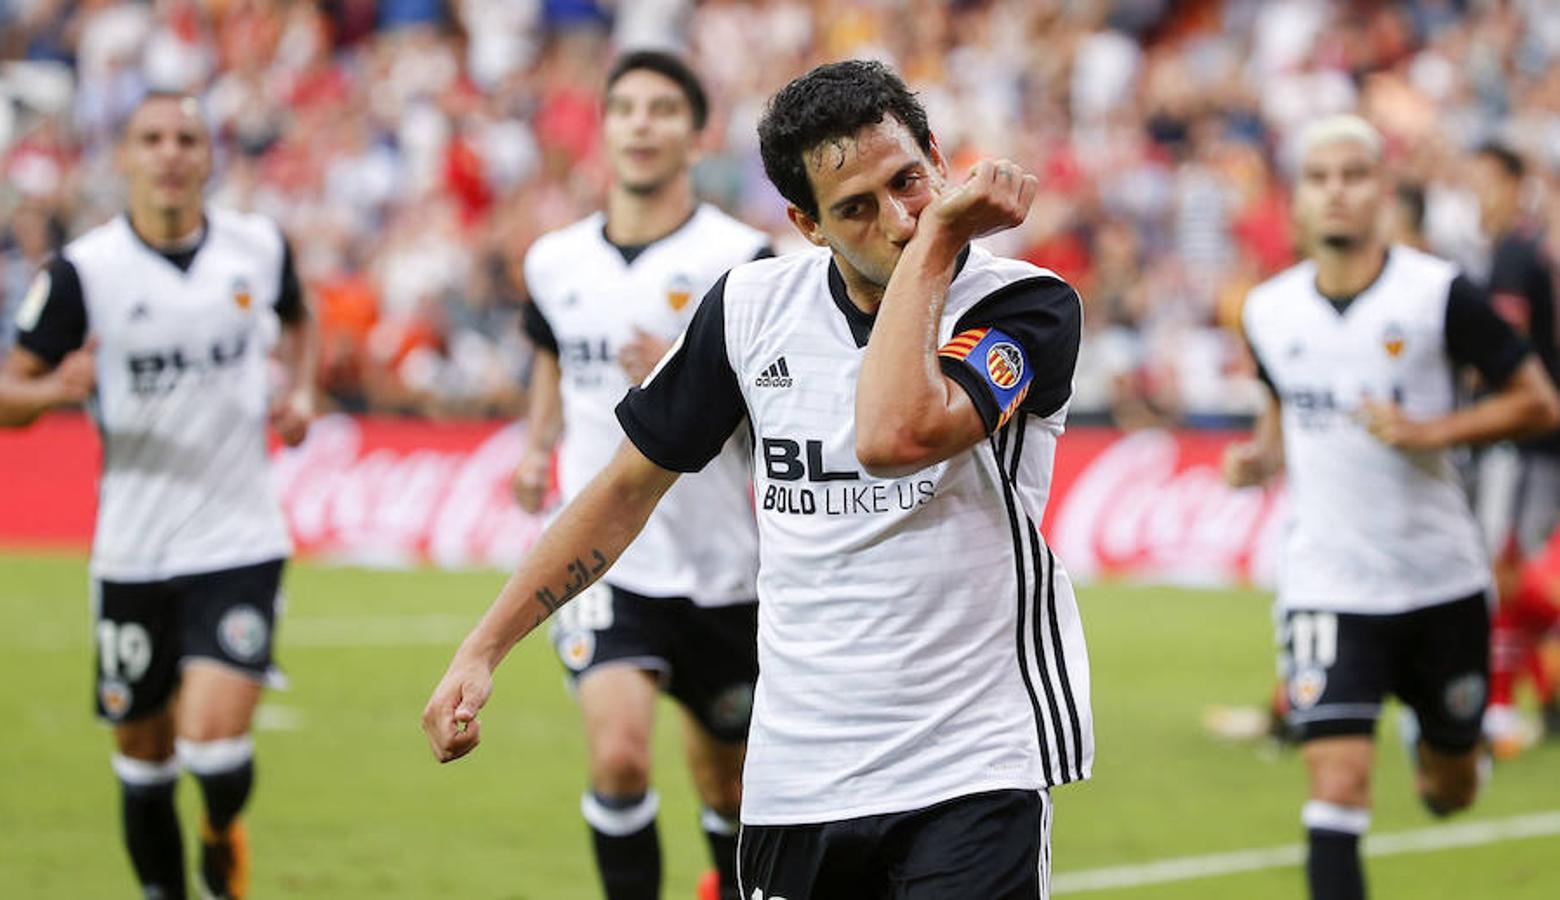 Estas son las mejores imágenes del encuentro entre el Valencia CF y el Athletic Club en Mestalla